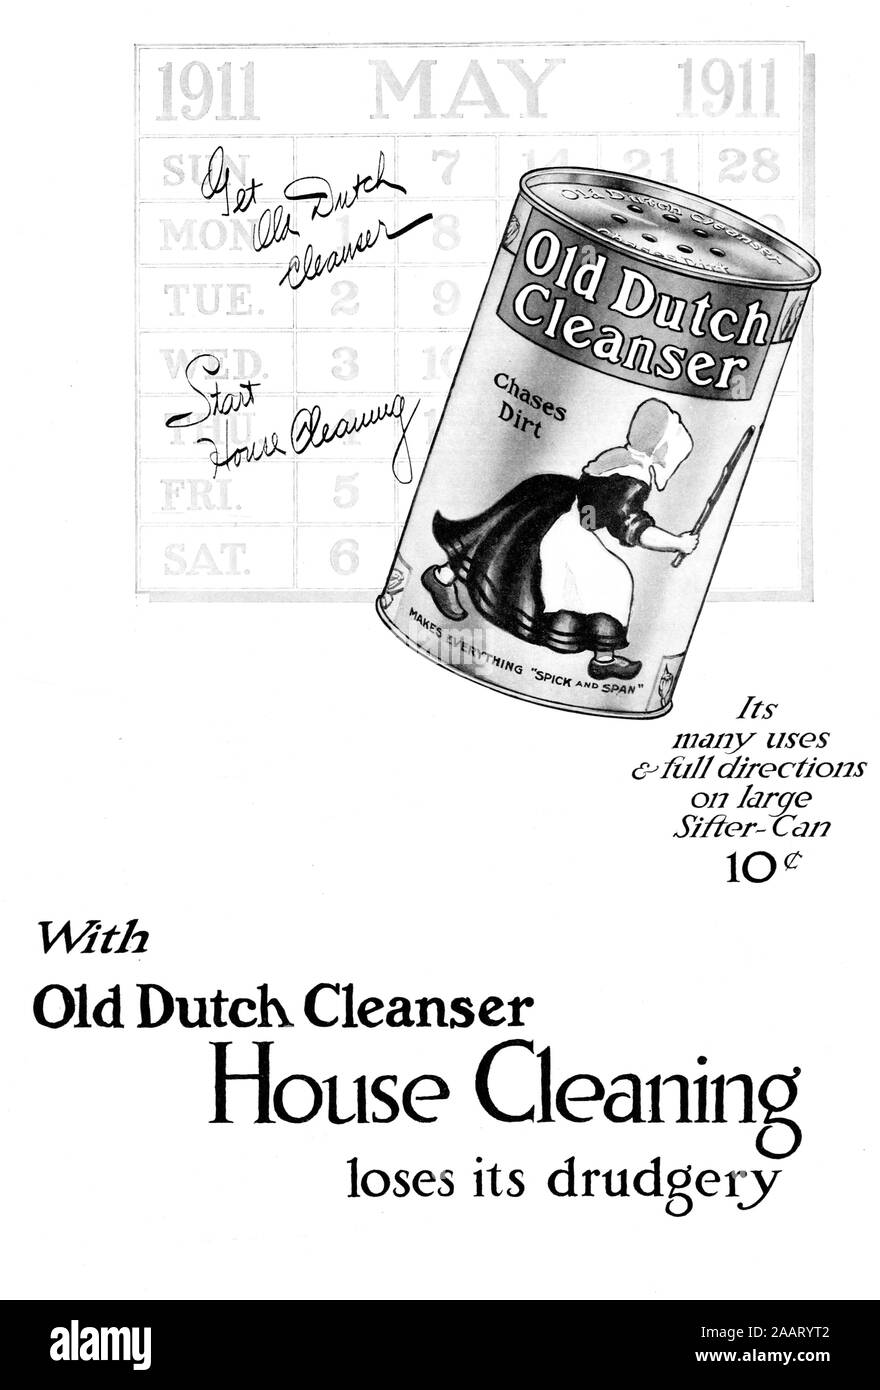 "Mit alten niederländischen Reiniger Haus Reinigung verliert seine Schufterei" - Reinigung Werbung vom Magazin 1911 getroffen Stockfoto